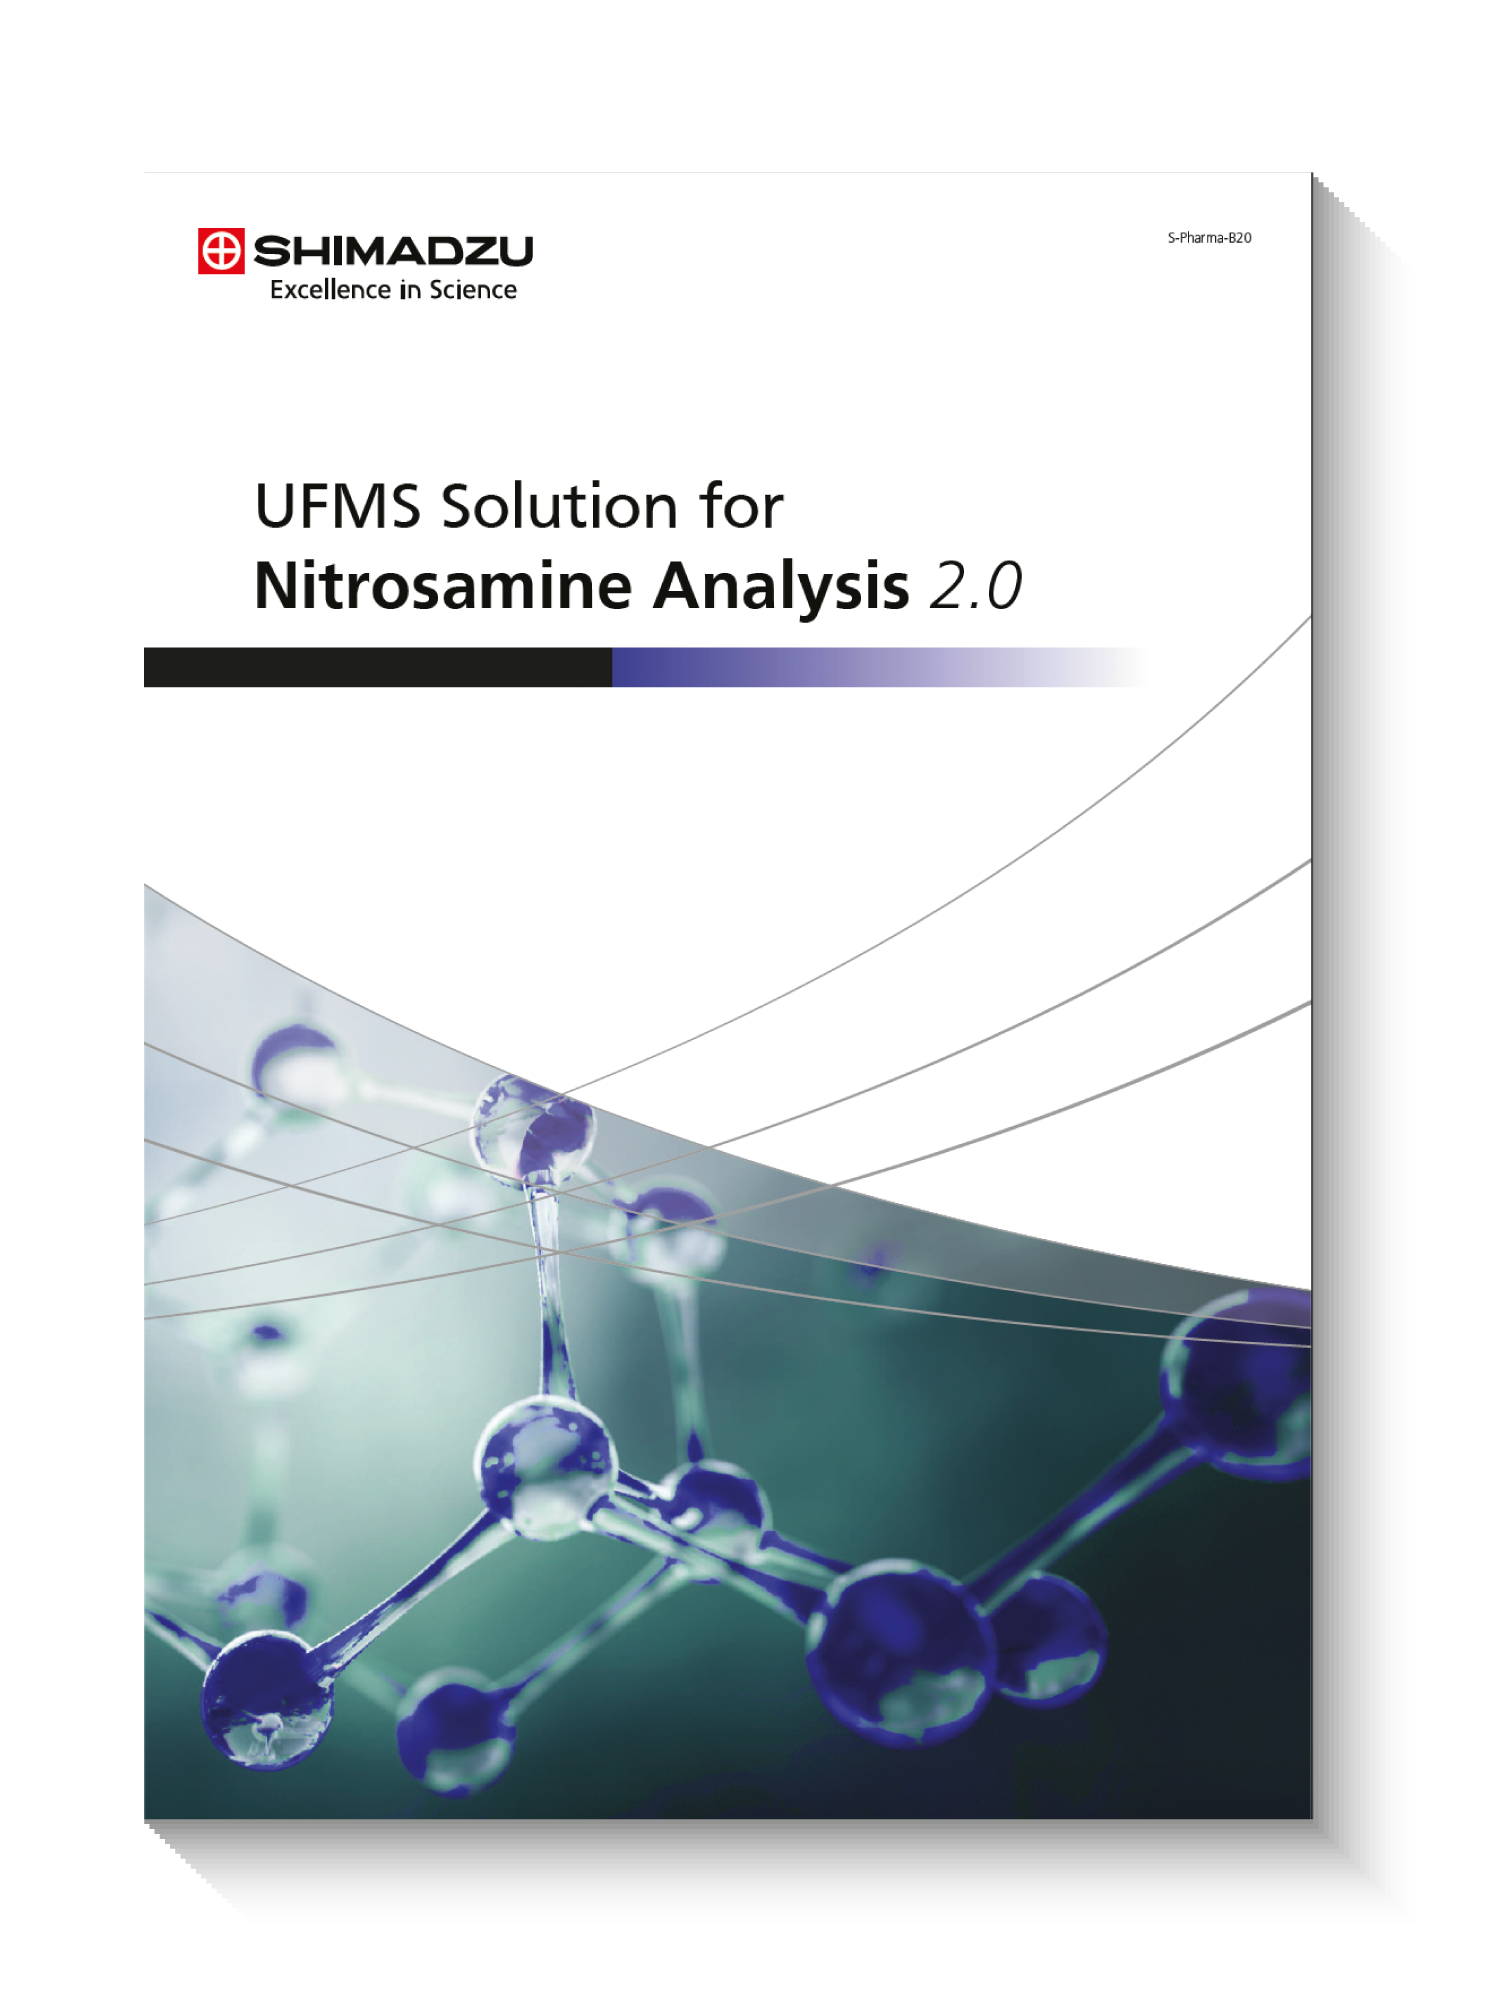 UFMS Solution for Nitrosamine Analysis 2.0